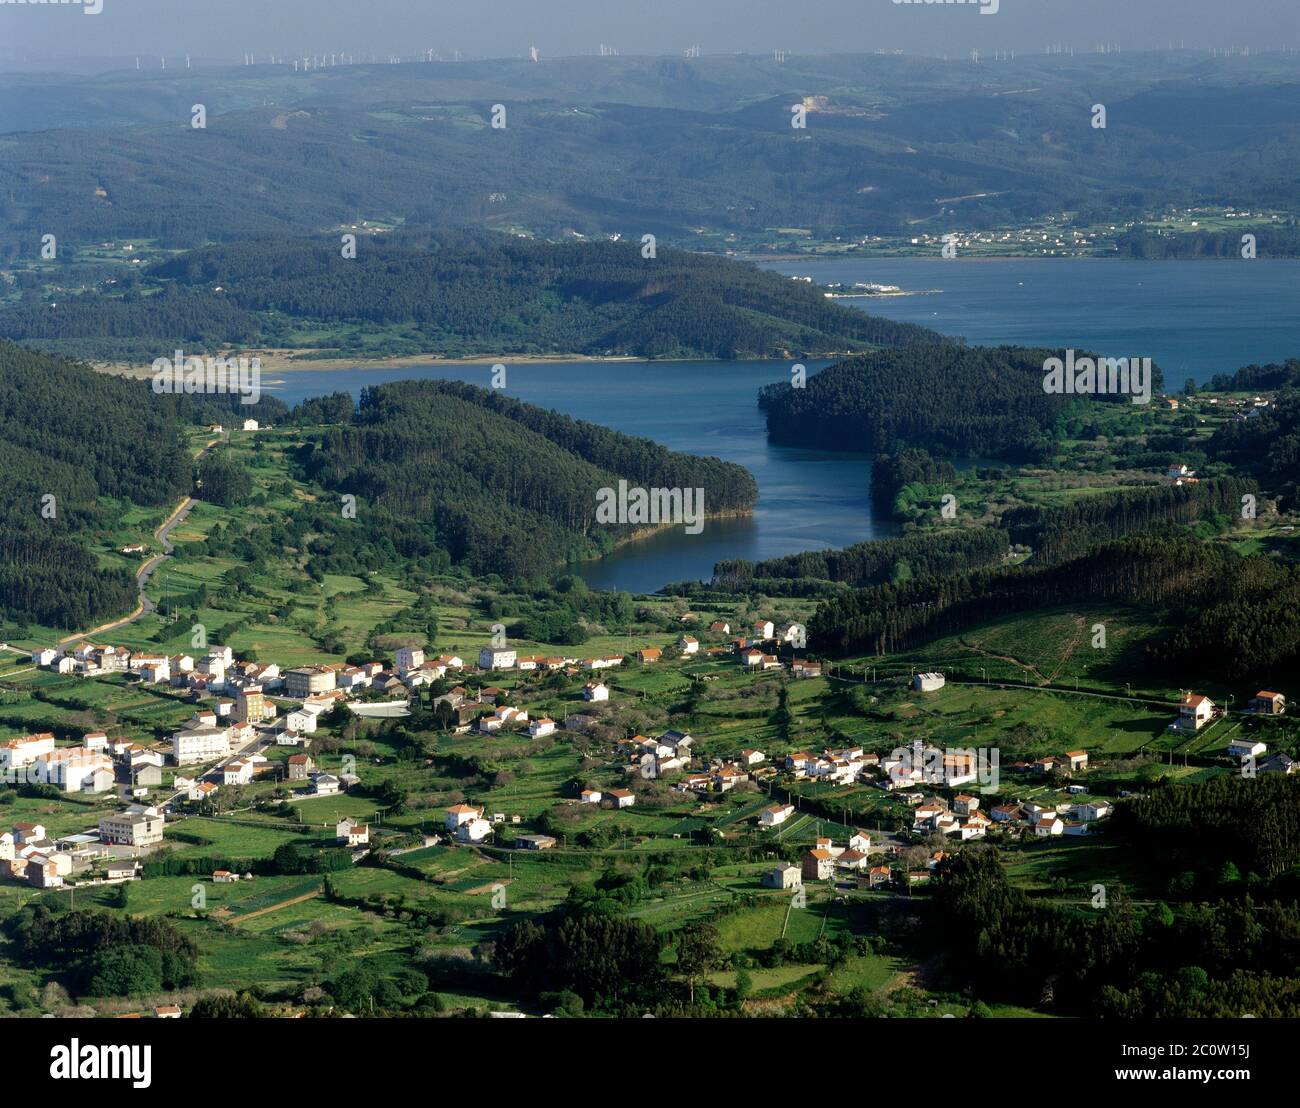 Spanien, Galicien, Provinz La Coruña, Cariño. Panoramablick auf die Stadt und die Mündung des Ortigueira. Rias Altas (Obere Rias). Stockfoto